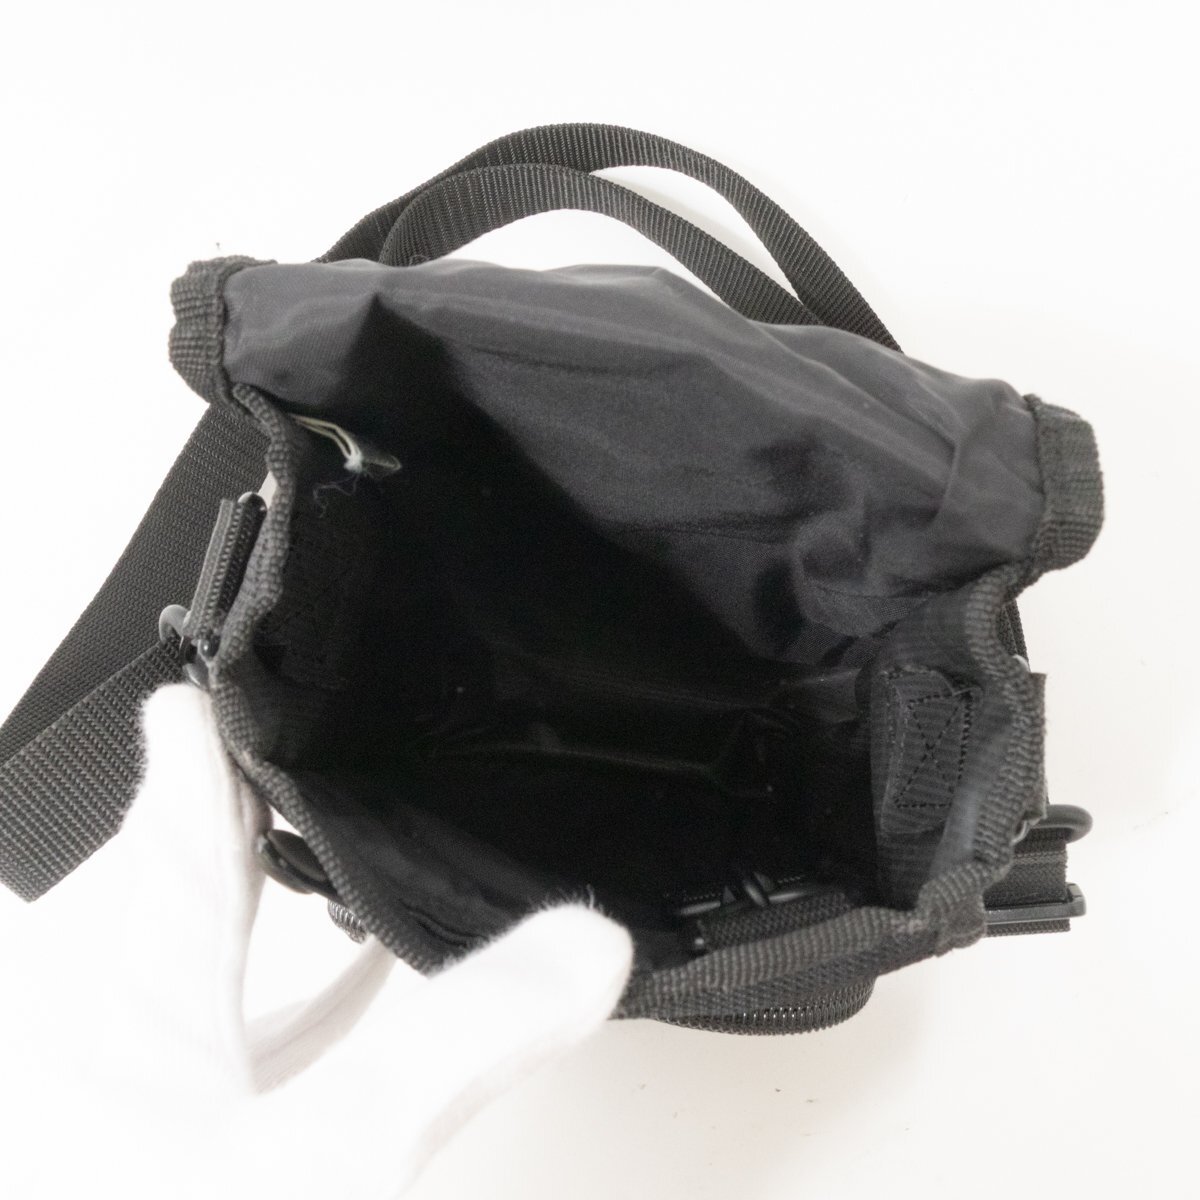 DIESEL ディーゼル ショルダーバッグ ブラック 黒 グレー ナイロン メンズ 斜め掛け シンプル 小さめ 収納多数 カジュアル bag 鞄 かばん_画像6